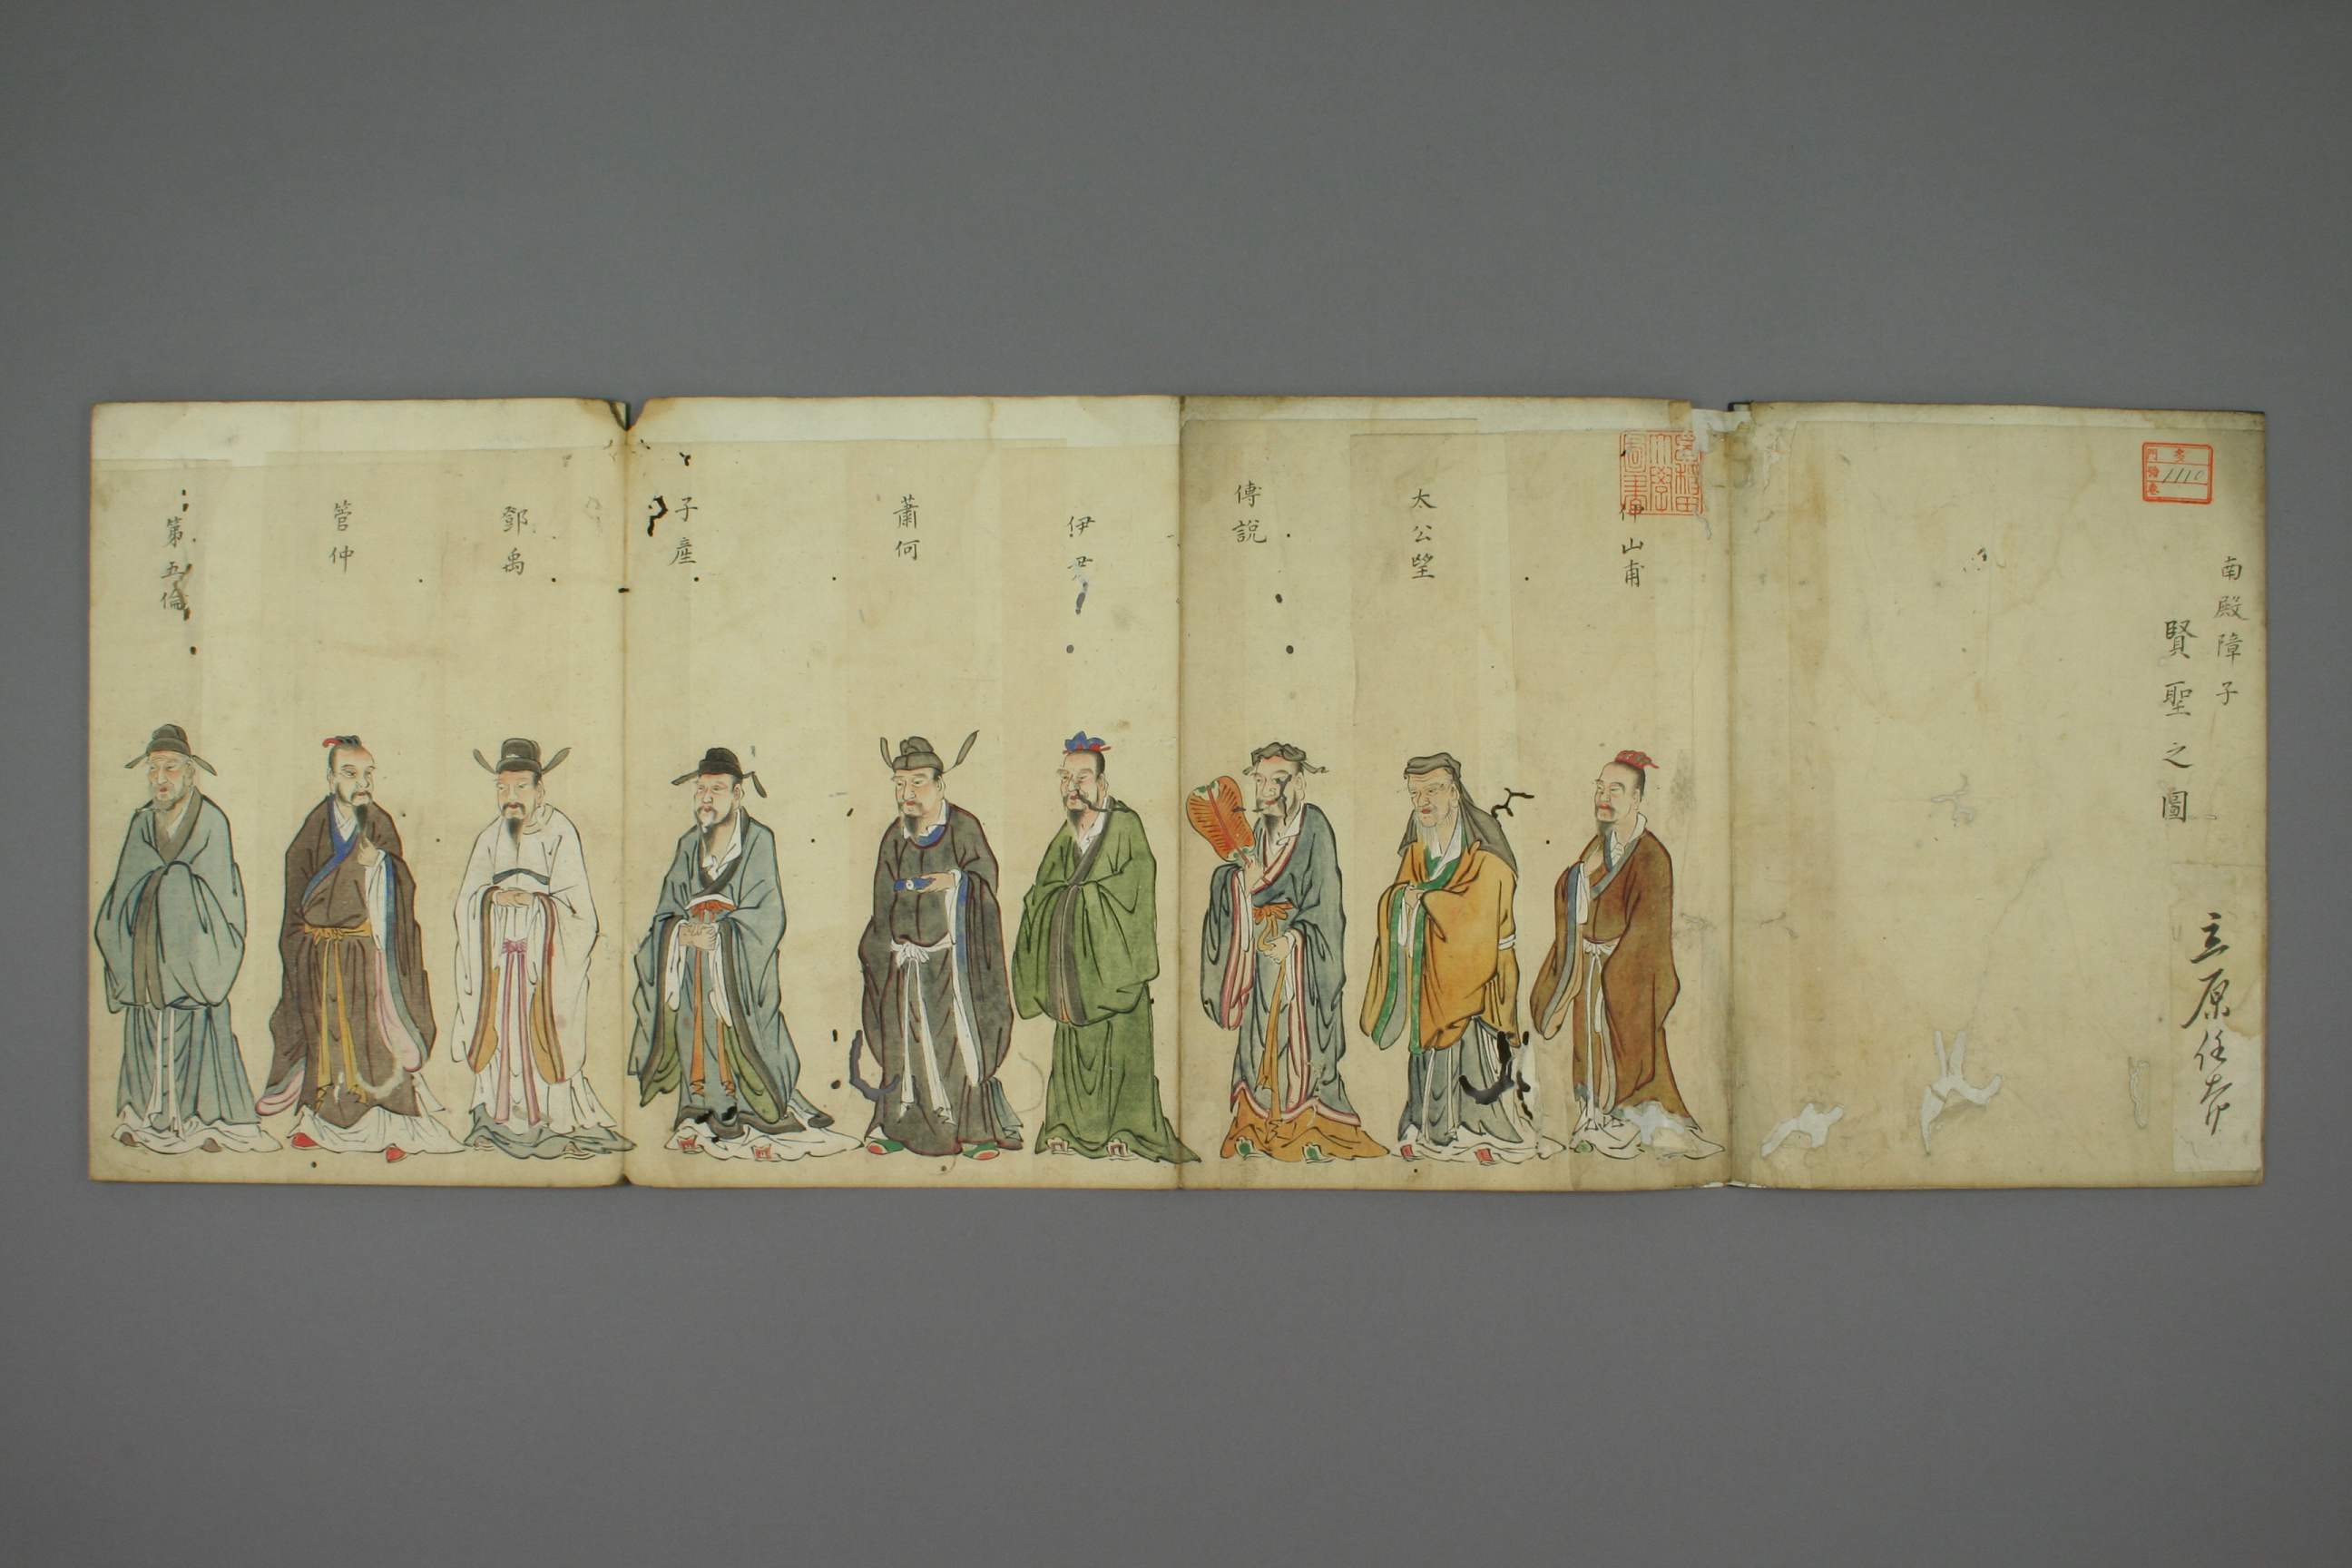 日本人繪《南殿障子賢聖之圖》中的子產等人